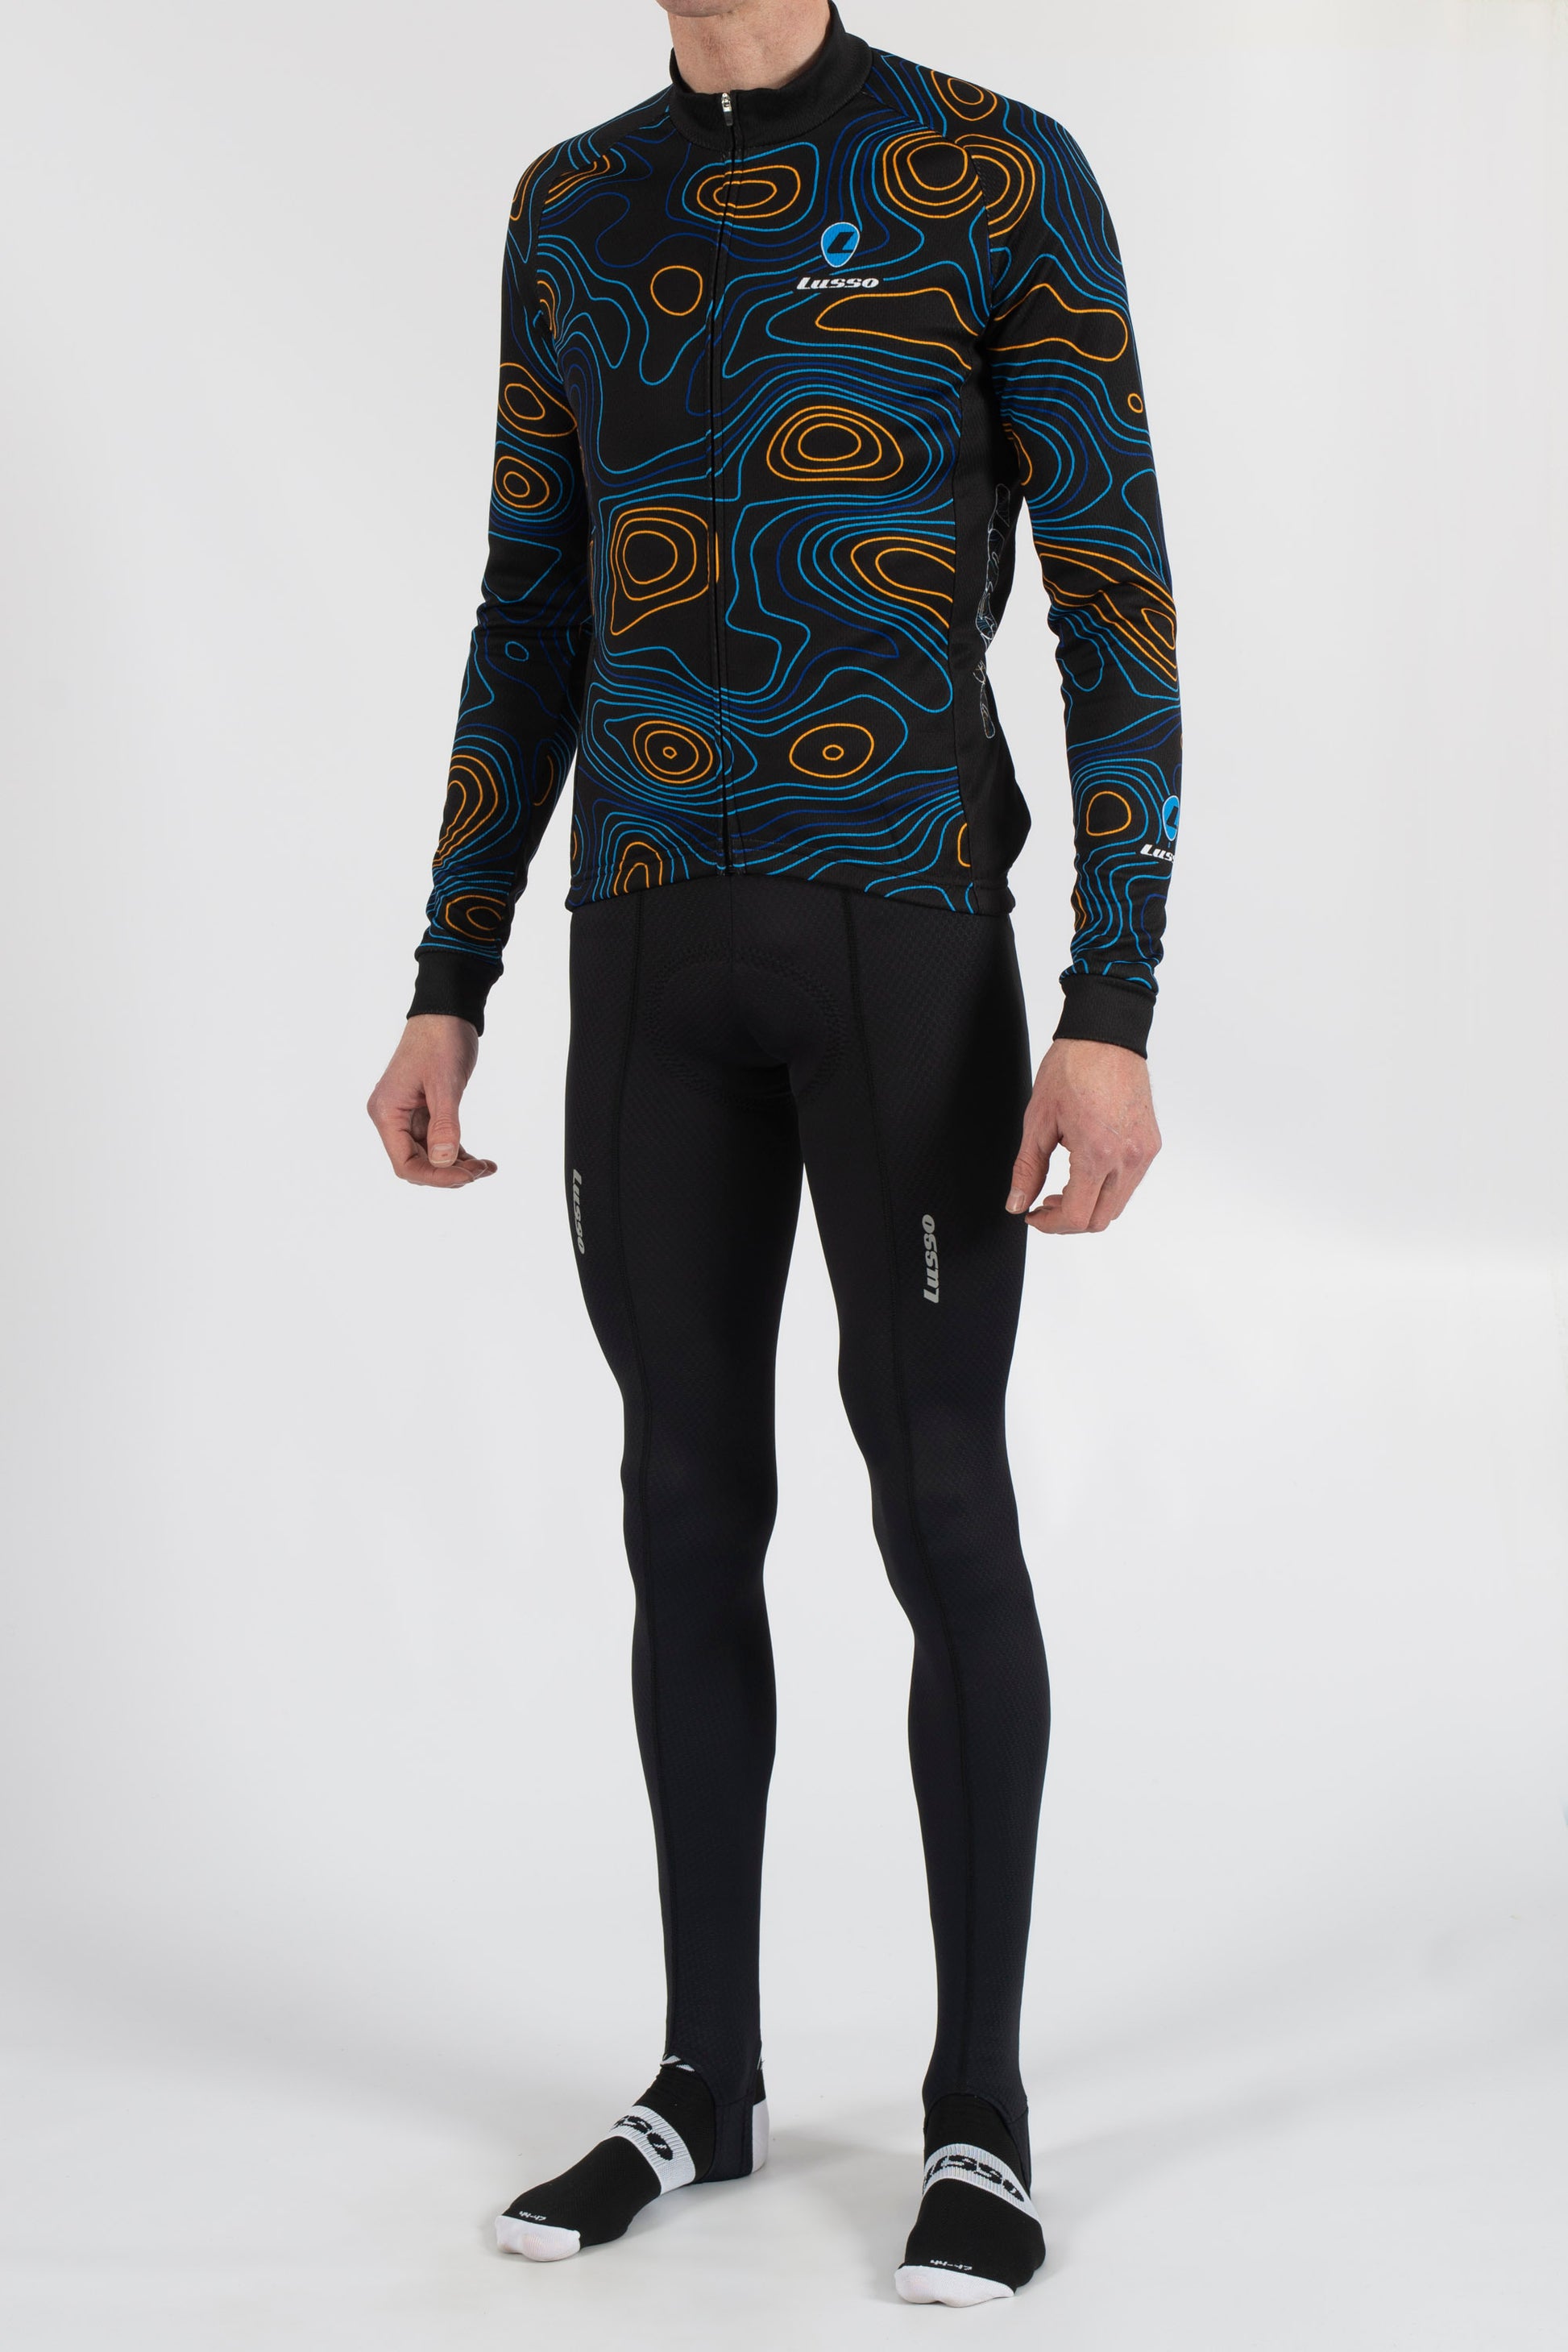 Terrain Black Long Sleeve Jersey - Lusso Cycle Wear